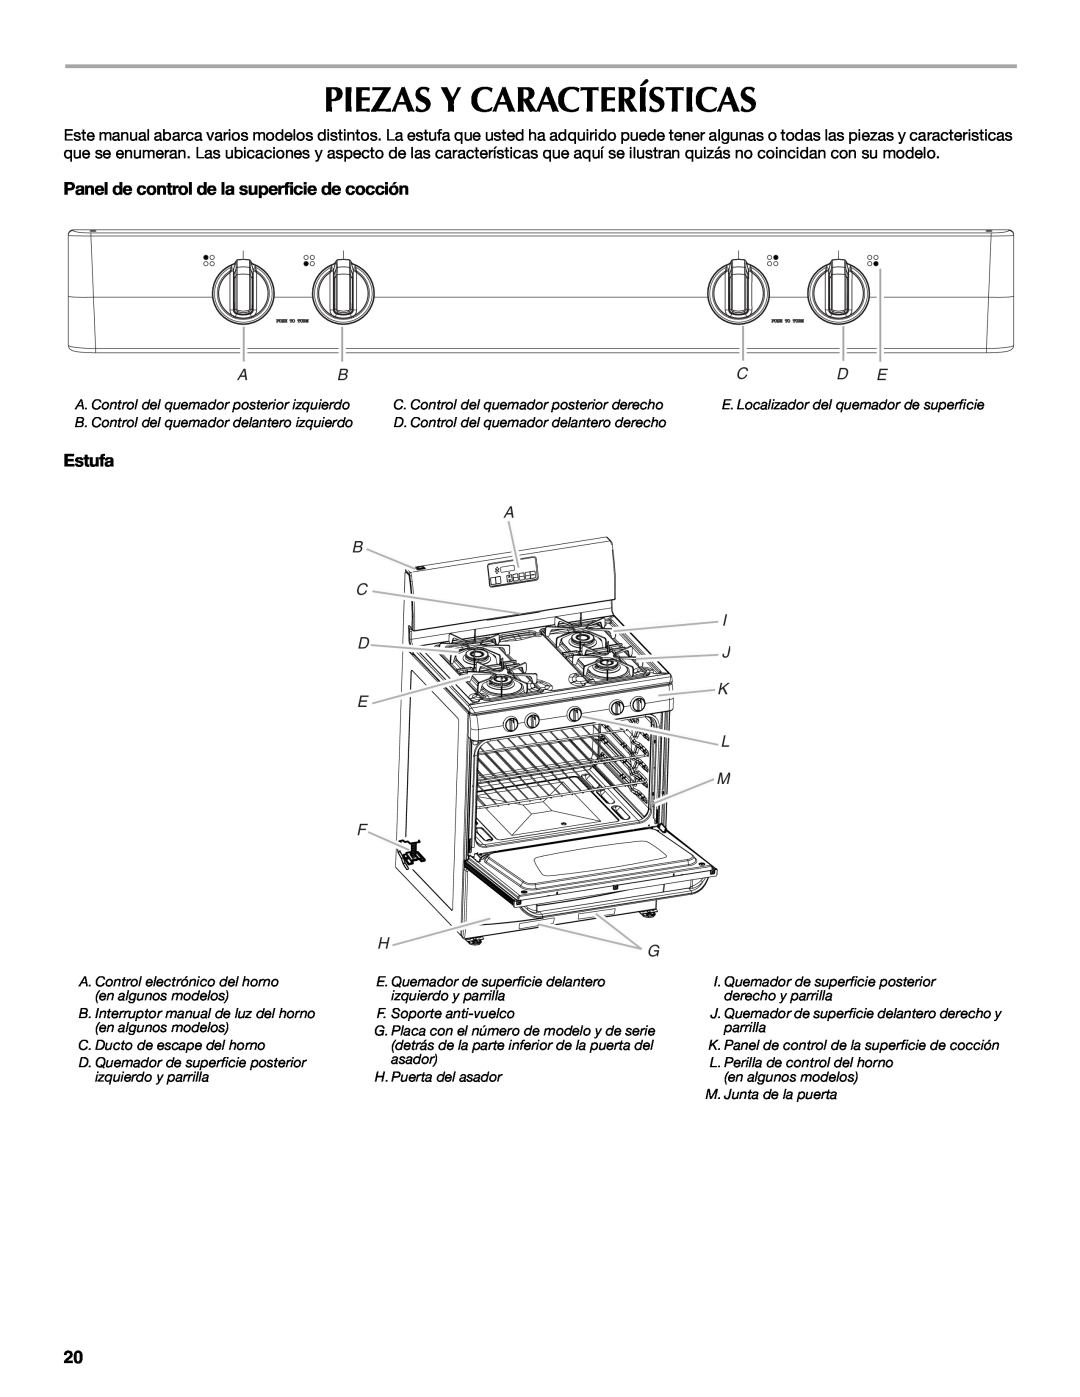 Maytag W10304917A Piezas Y Características, Panel de control de la superficie de cocción, Estufa, B C D E, I J K, L M F 